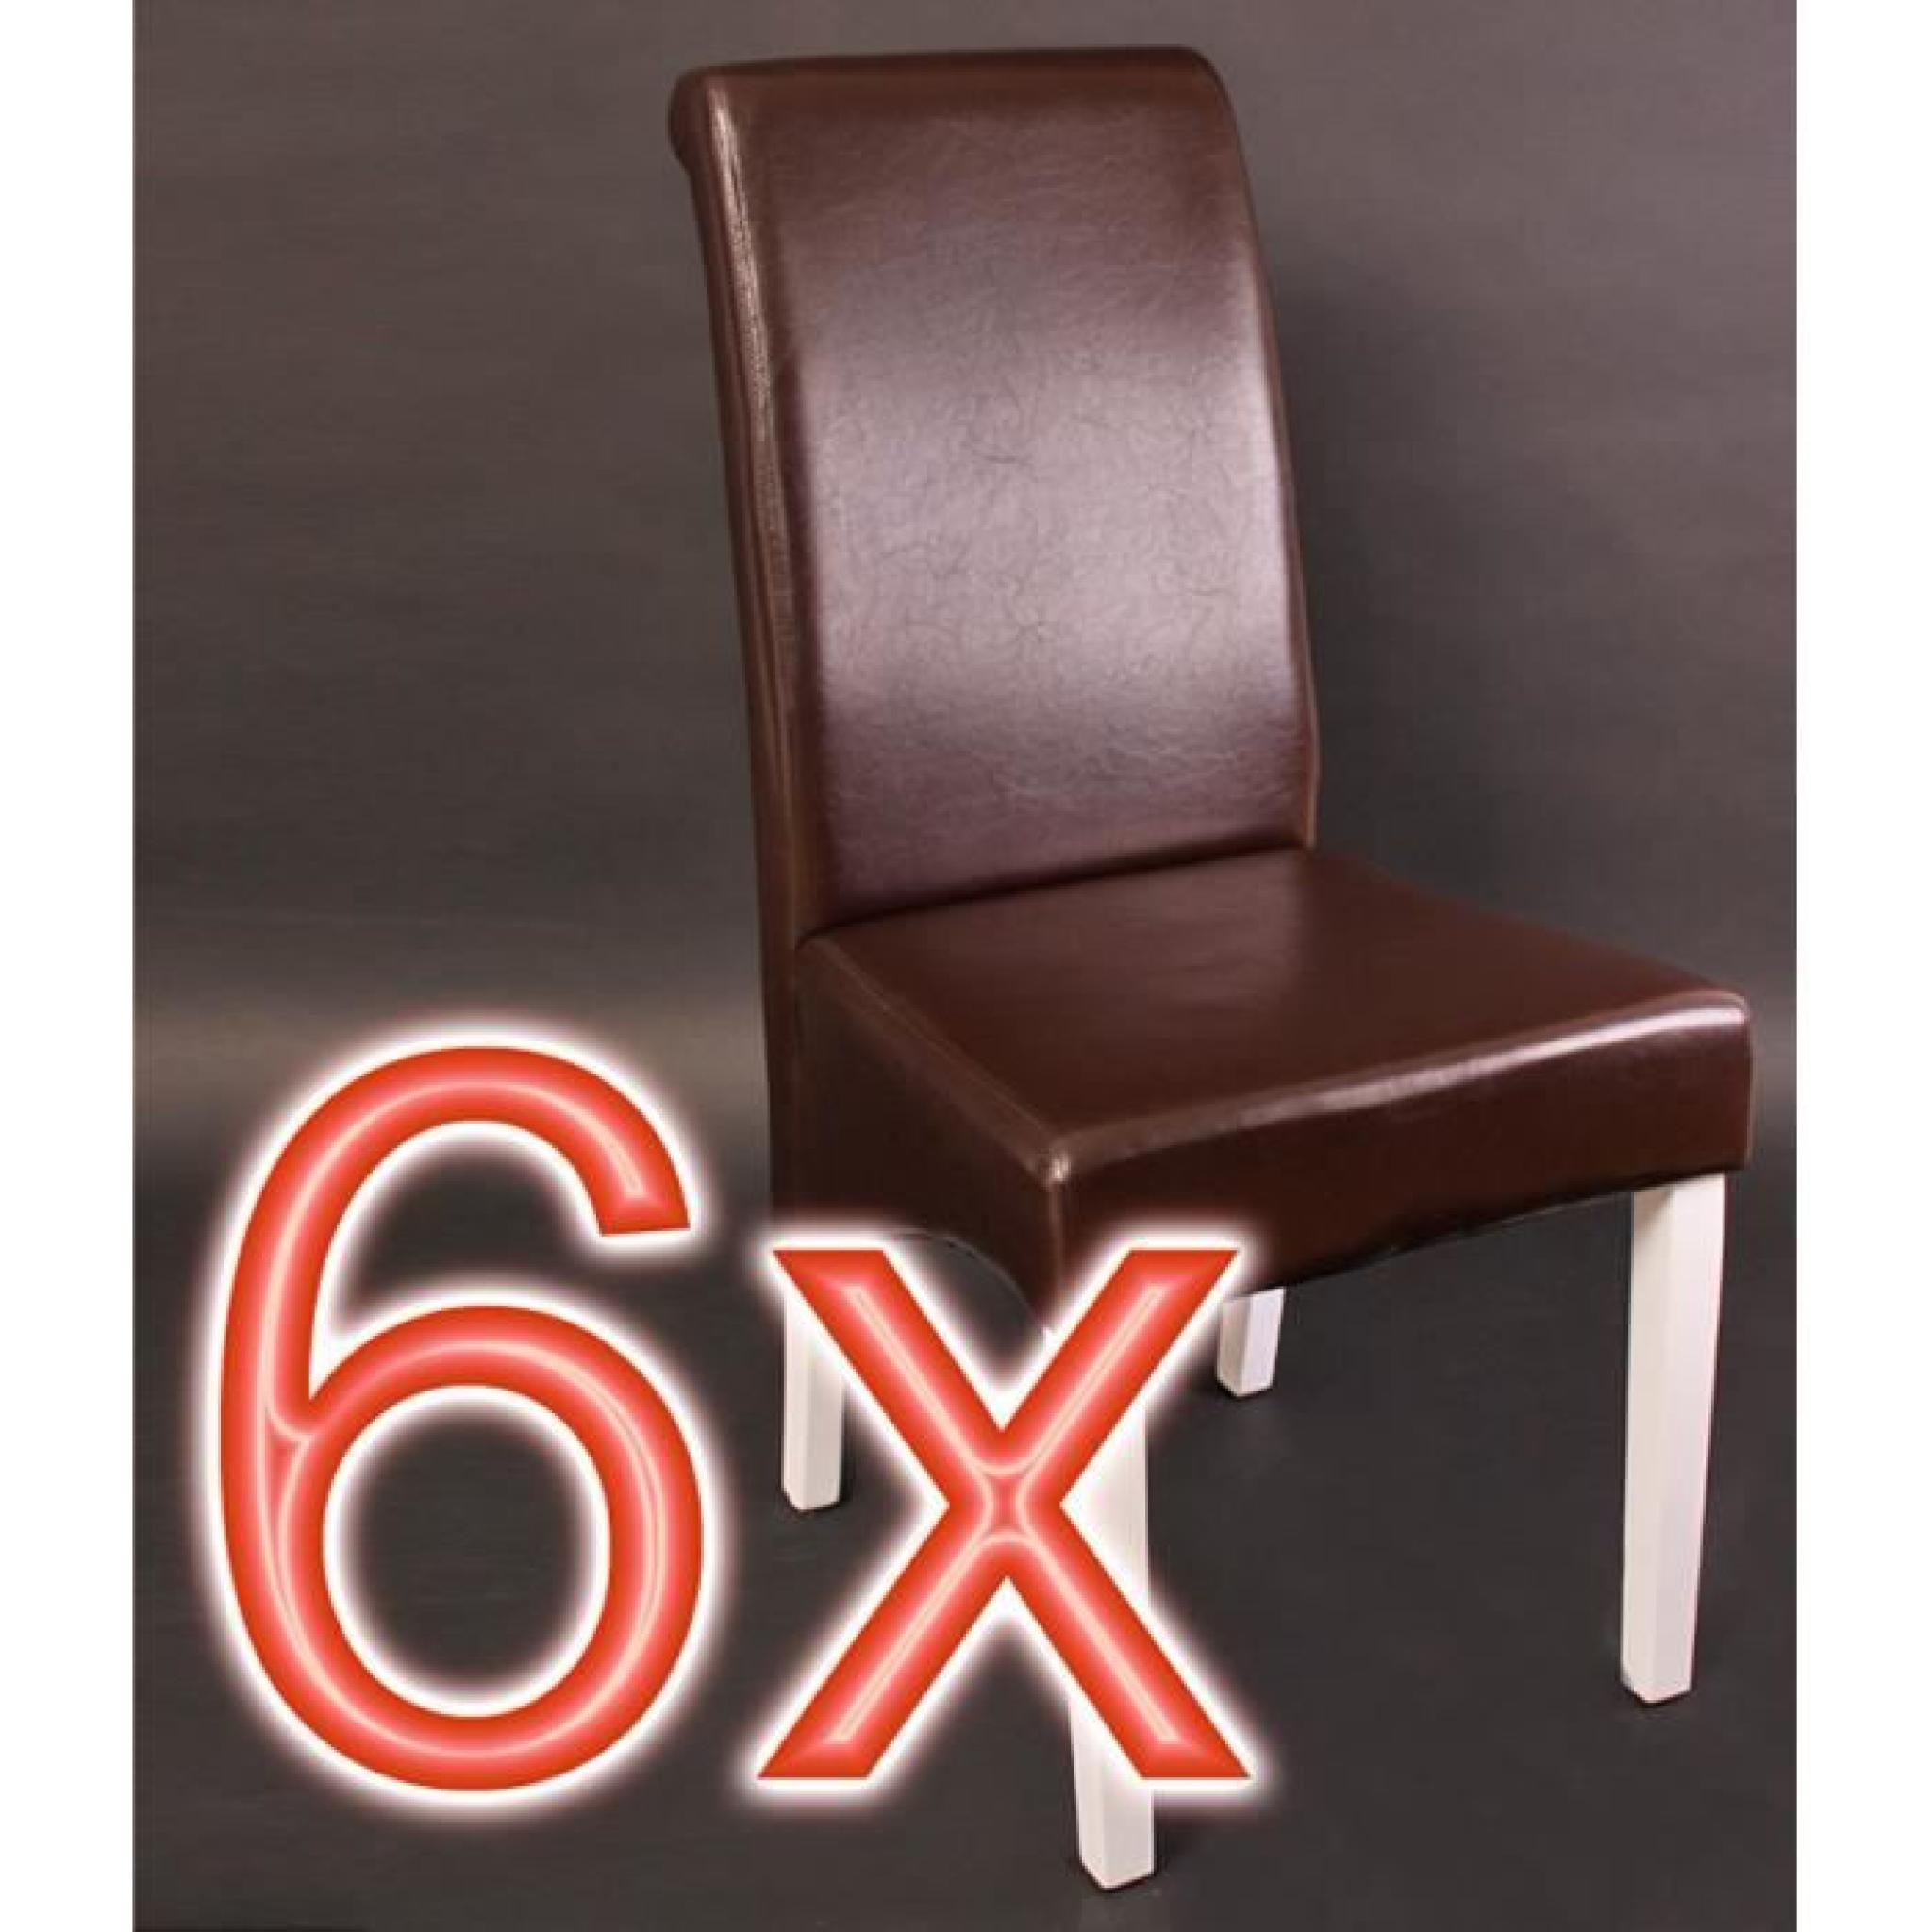 Lot de 6 chaises salle à manger, inclinable en cuir coloris brun, pieds blancs